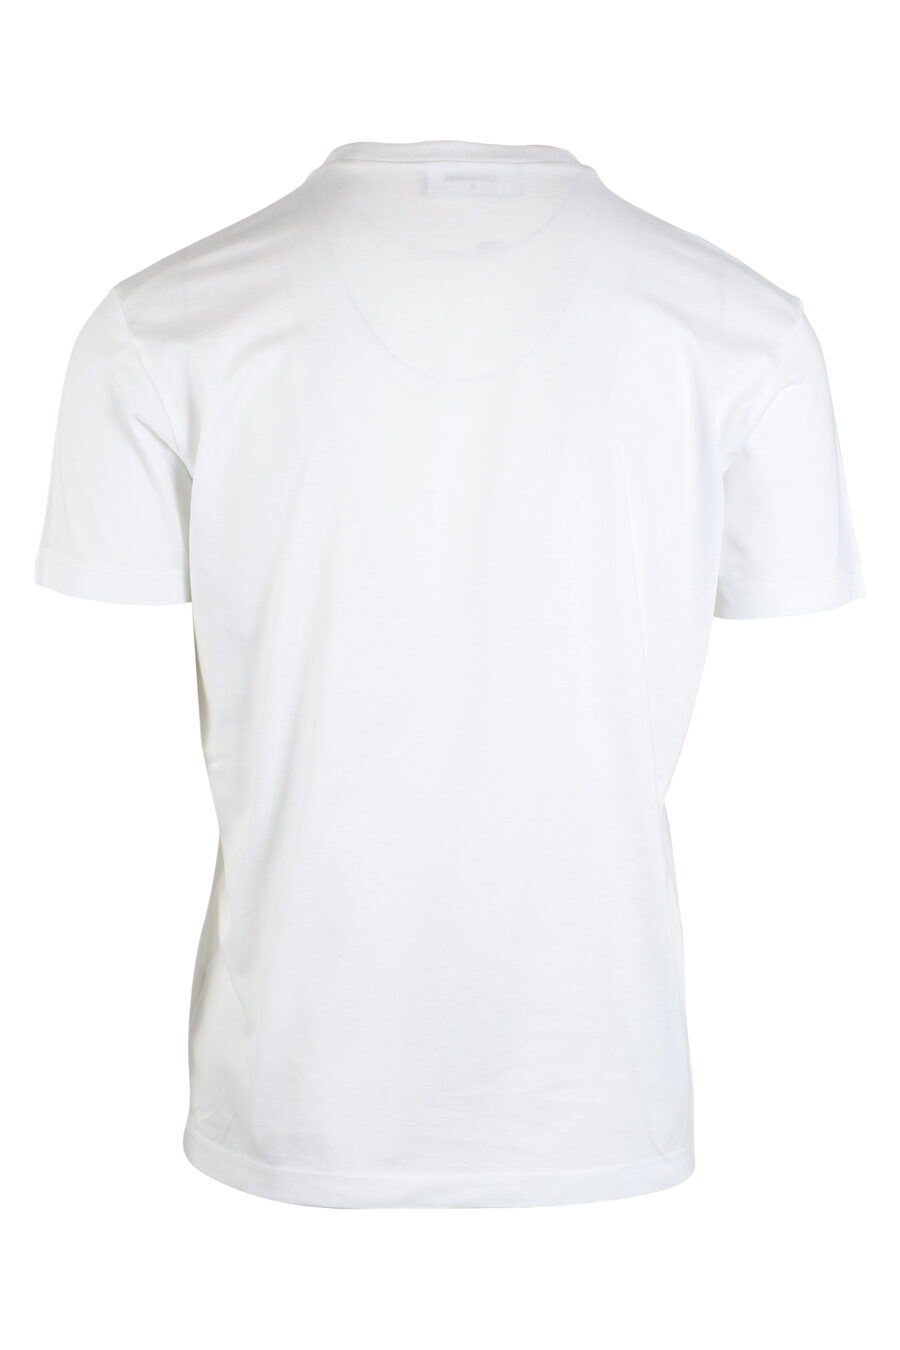 Camiseta blanca con maxilogo "icon" - IMG 0671